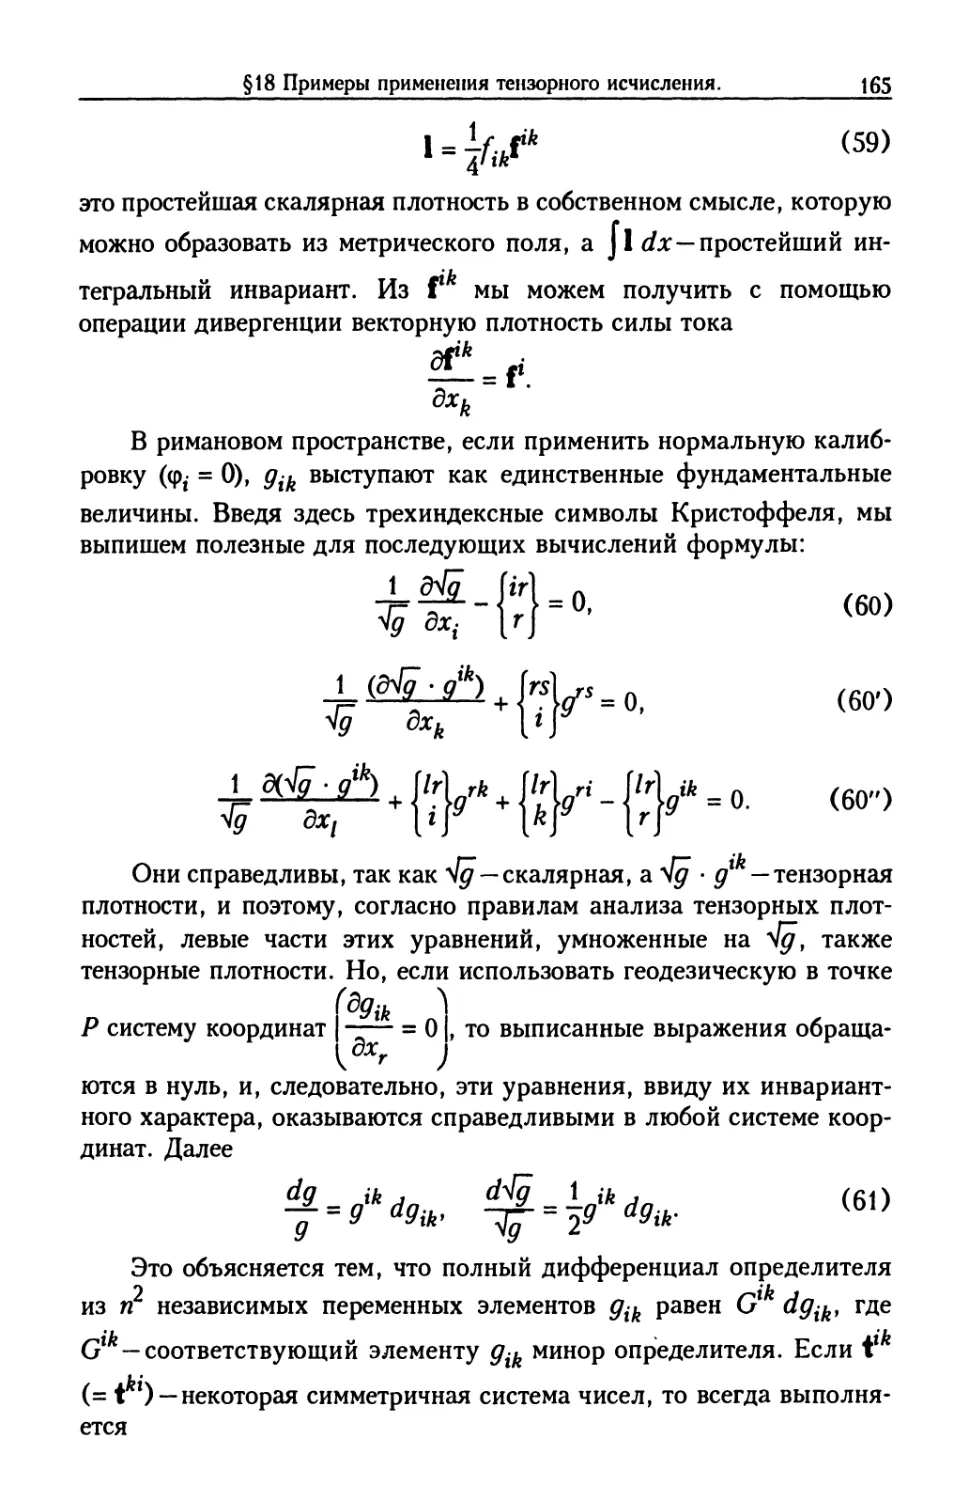 §18. Примеры применения тензорного исчисления. Кратчайшие линии в римановом пространстве